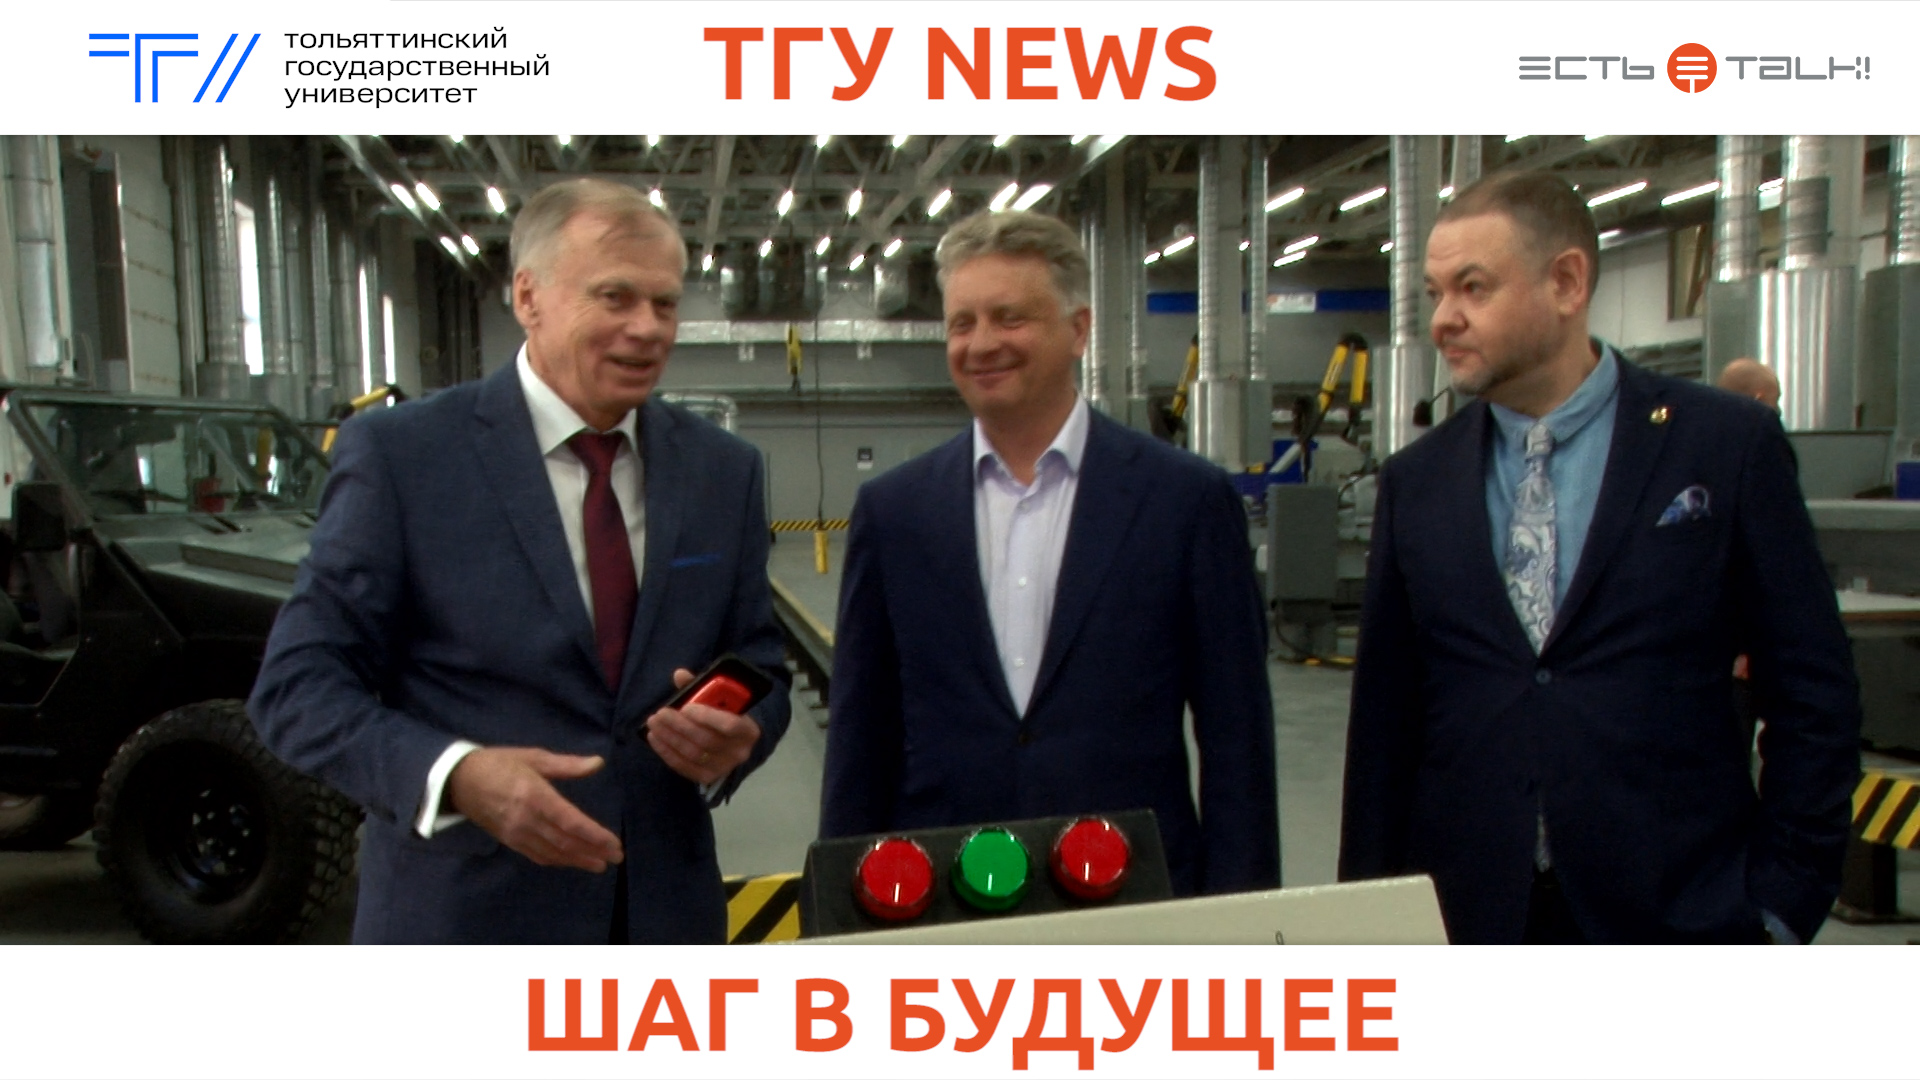 ТГУ News: Рабочий визит руководства АО «АВТОВАЗ» в Тольяттинский госуниверситет